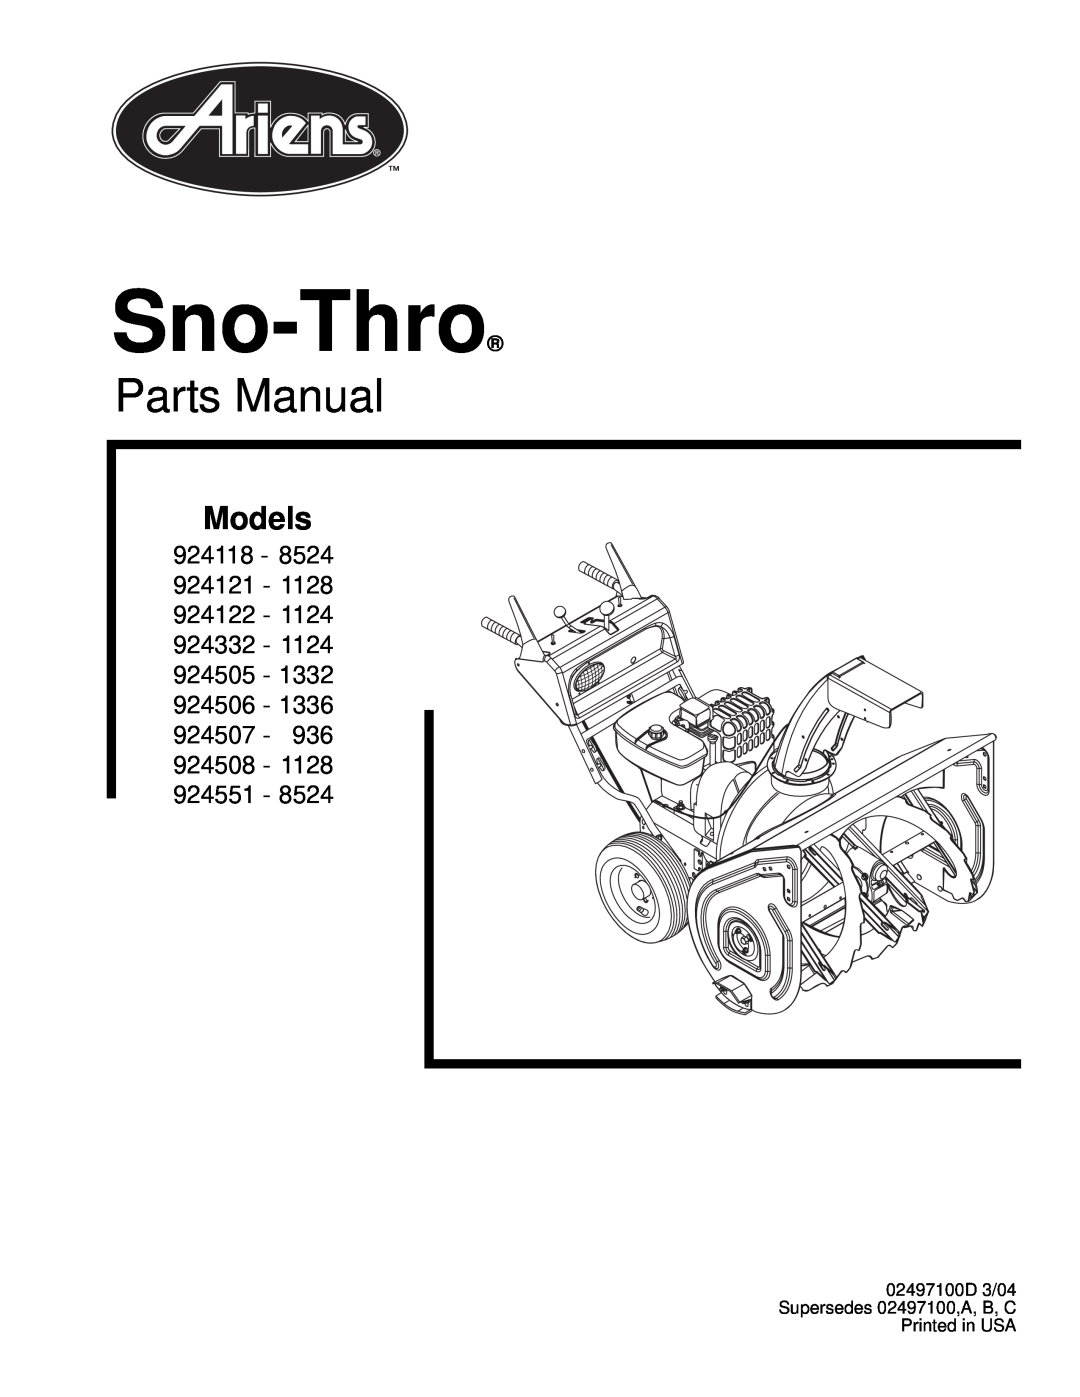 Ariens 924508 - 1128 manual Sno-Thro, Parts Manual, Models, 924118 - 924121, 924506 - 924507 - 924508 - 924551 